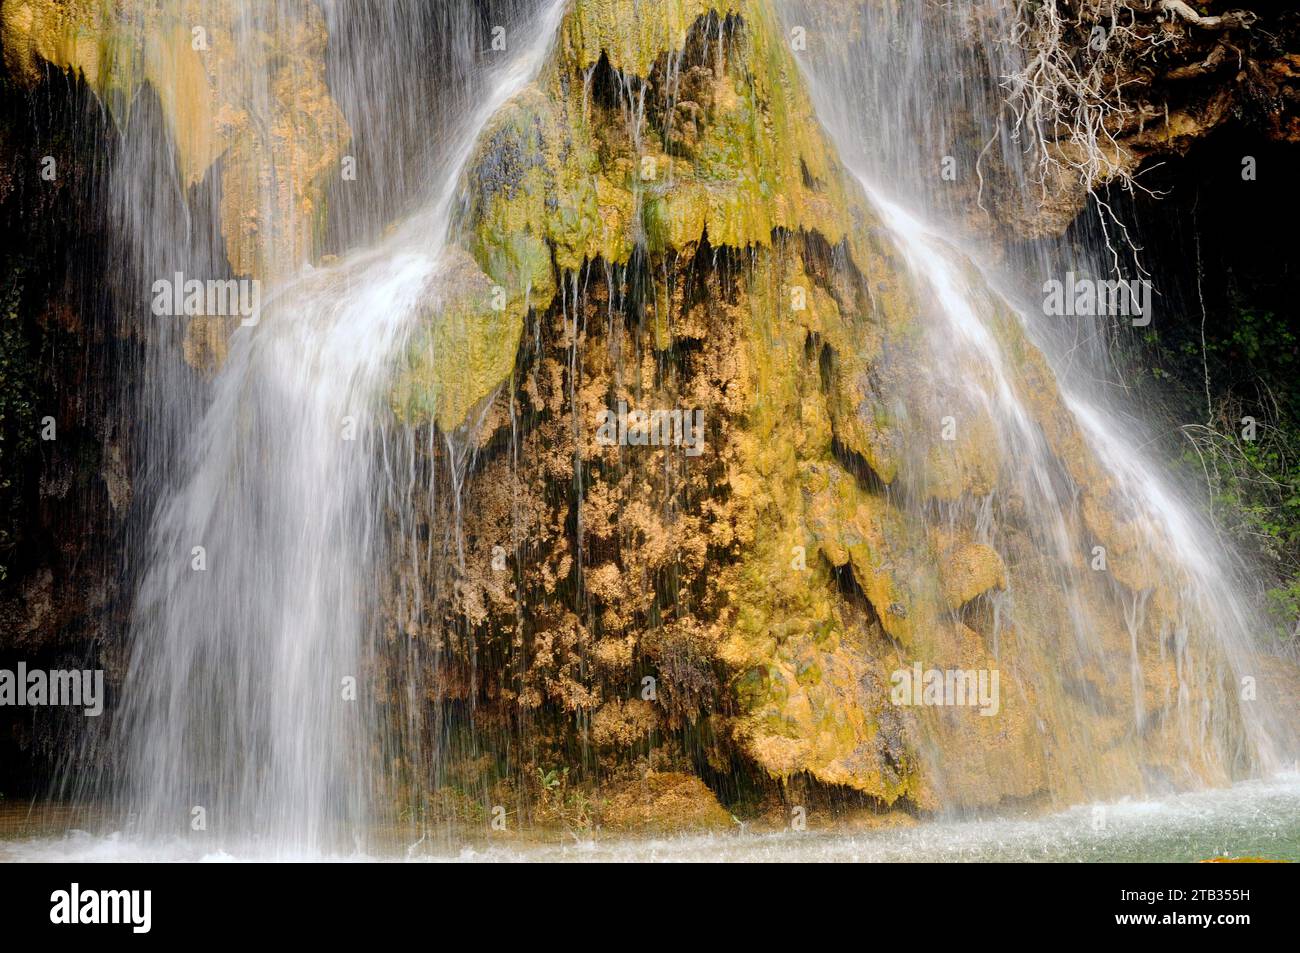 Cascada de la Hiedra, Mora de Rubielos, Gudar-Javalambre, Teruel province, Aragon, Spain. Stock Photo